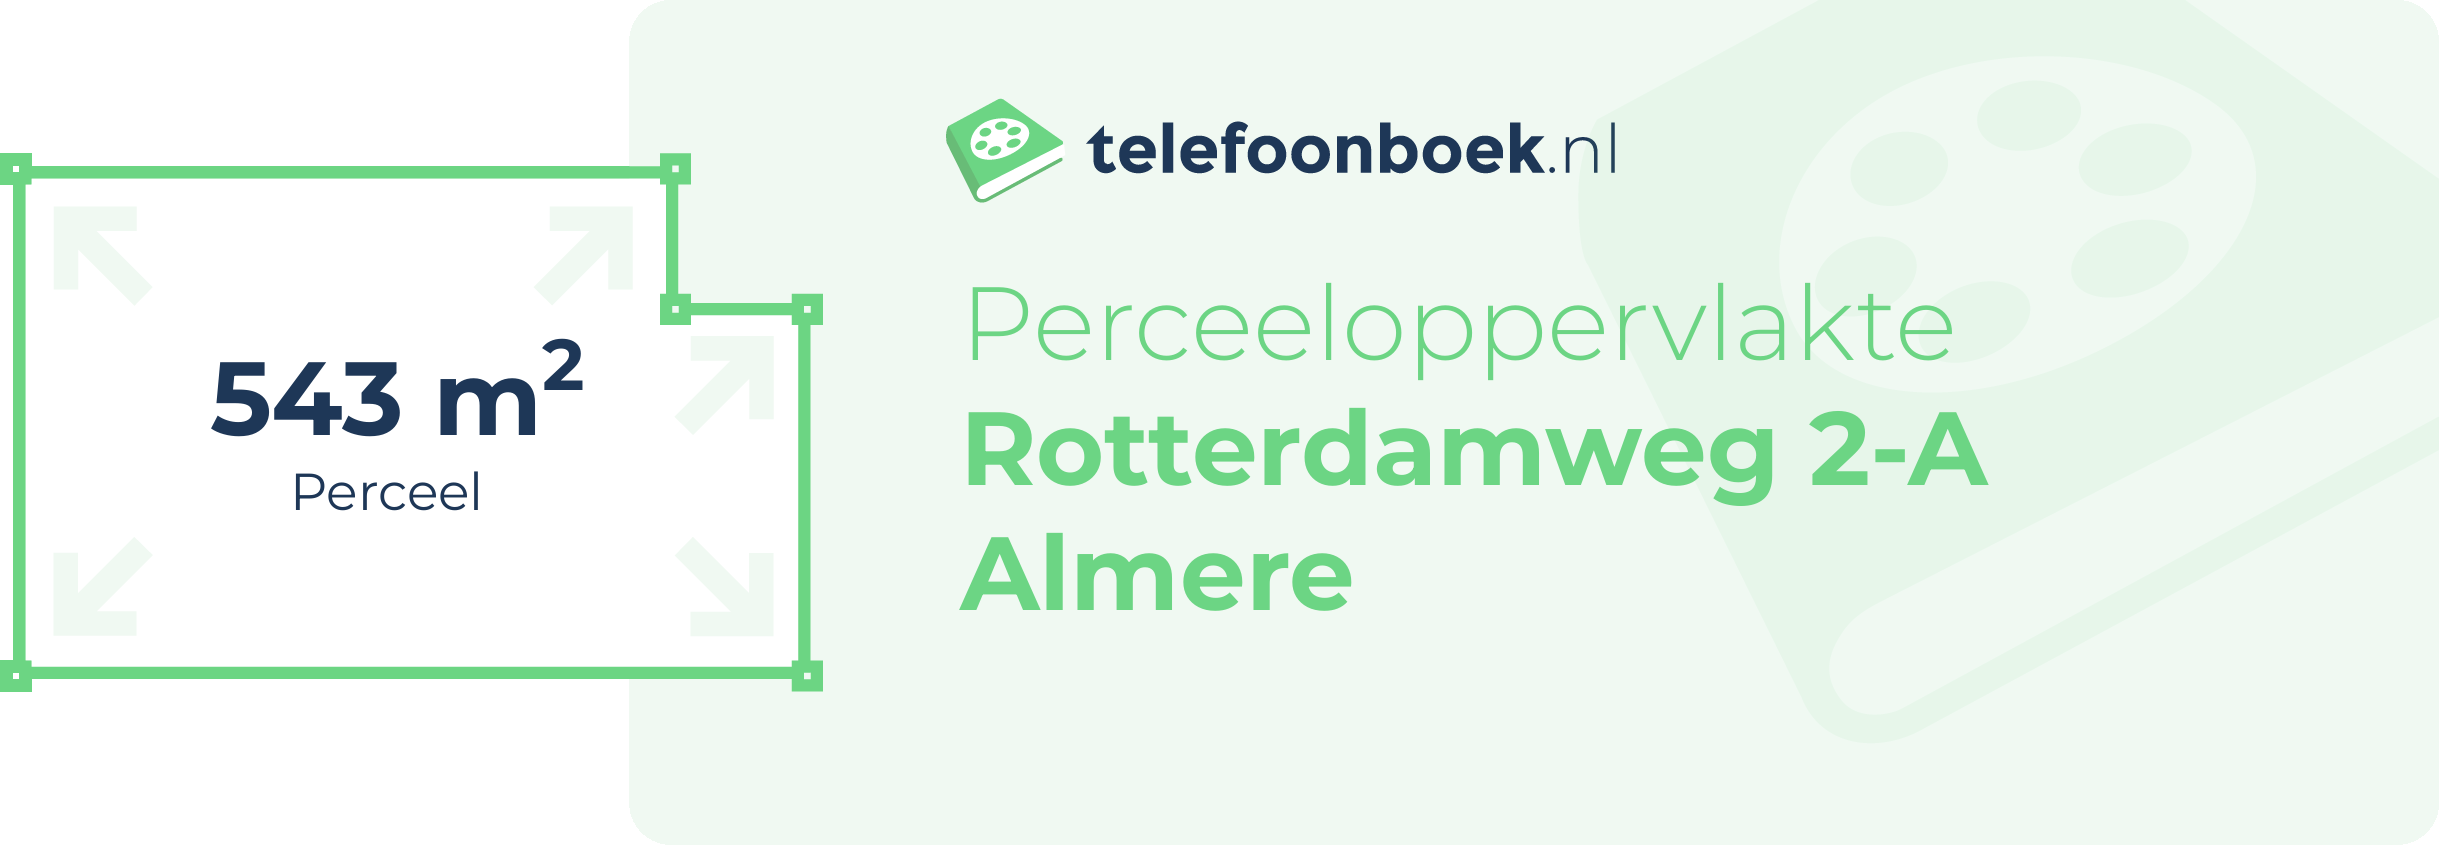 Perceeloppervlakte Rotterdamweg 2-A Almere